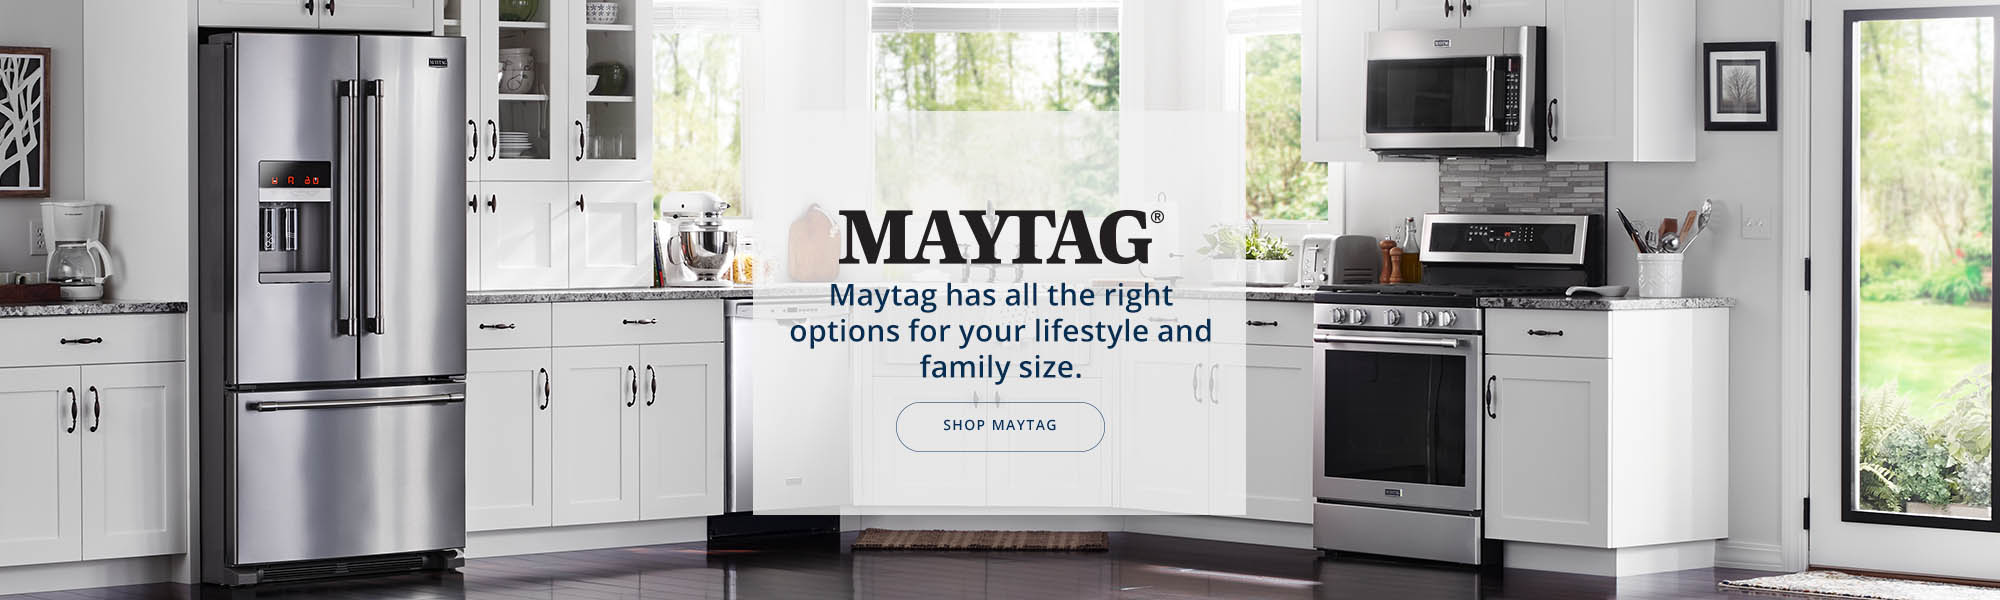 Maytag Appliances